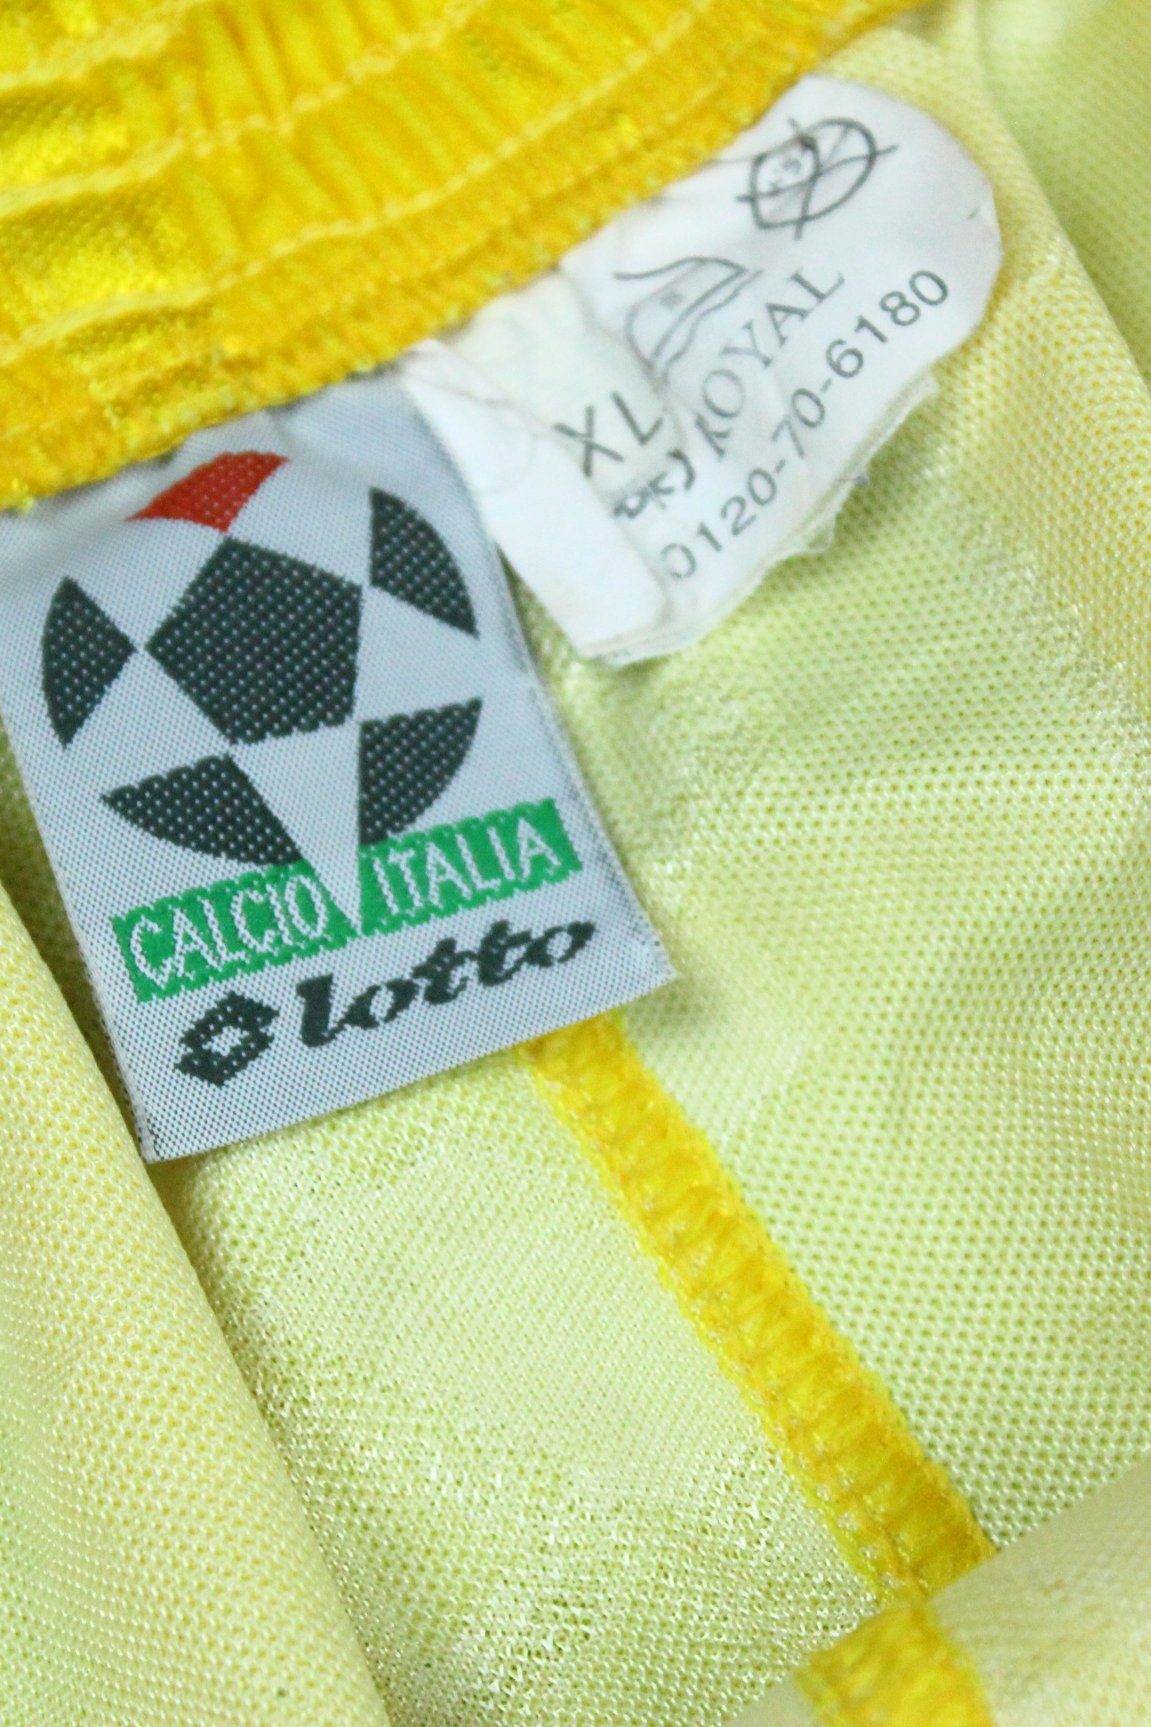 Parma Shorts 1998-1999 (XL)